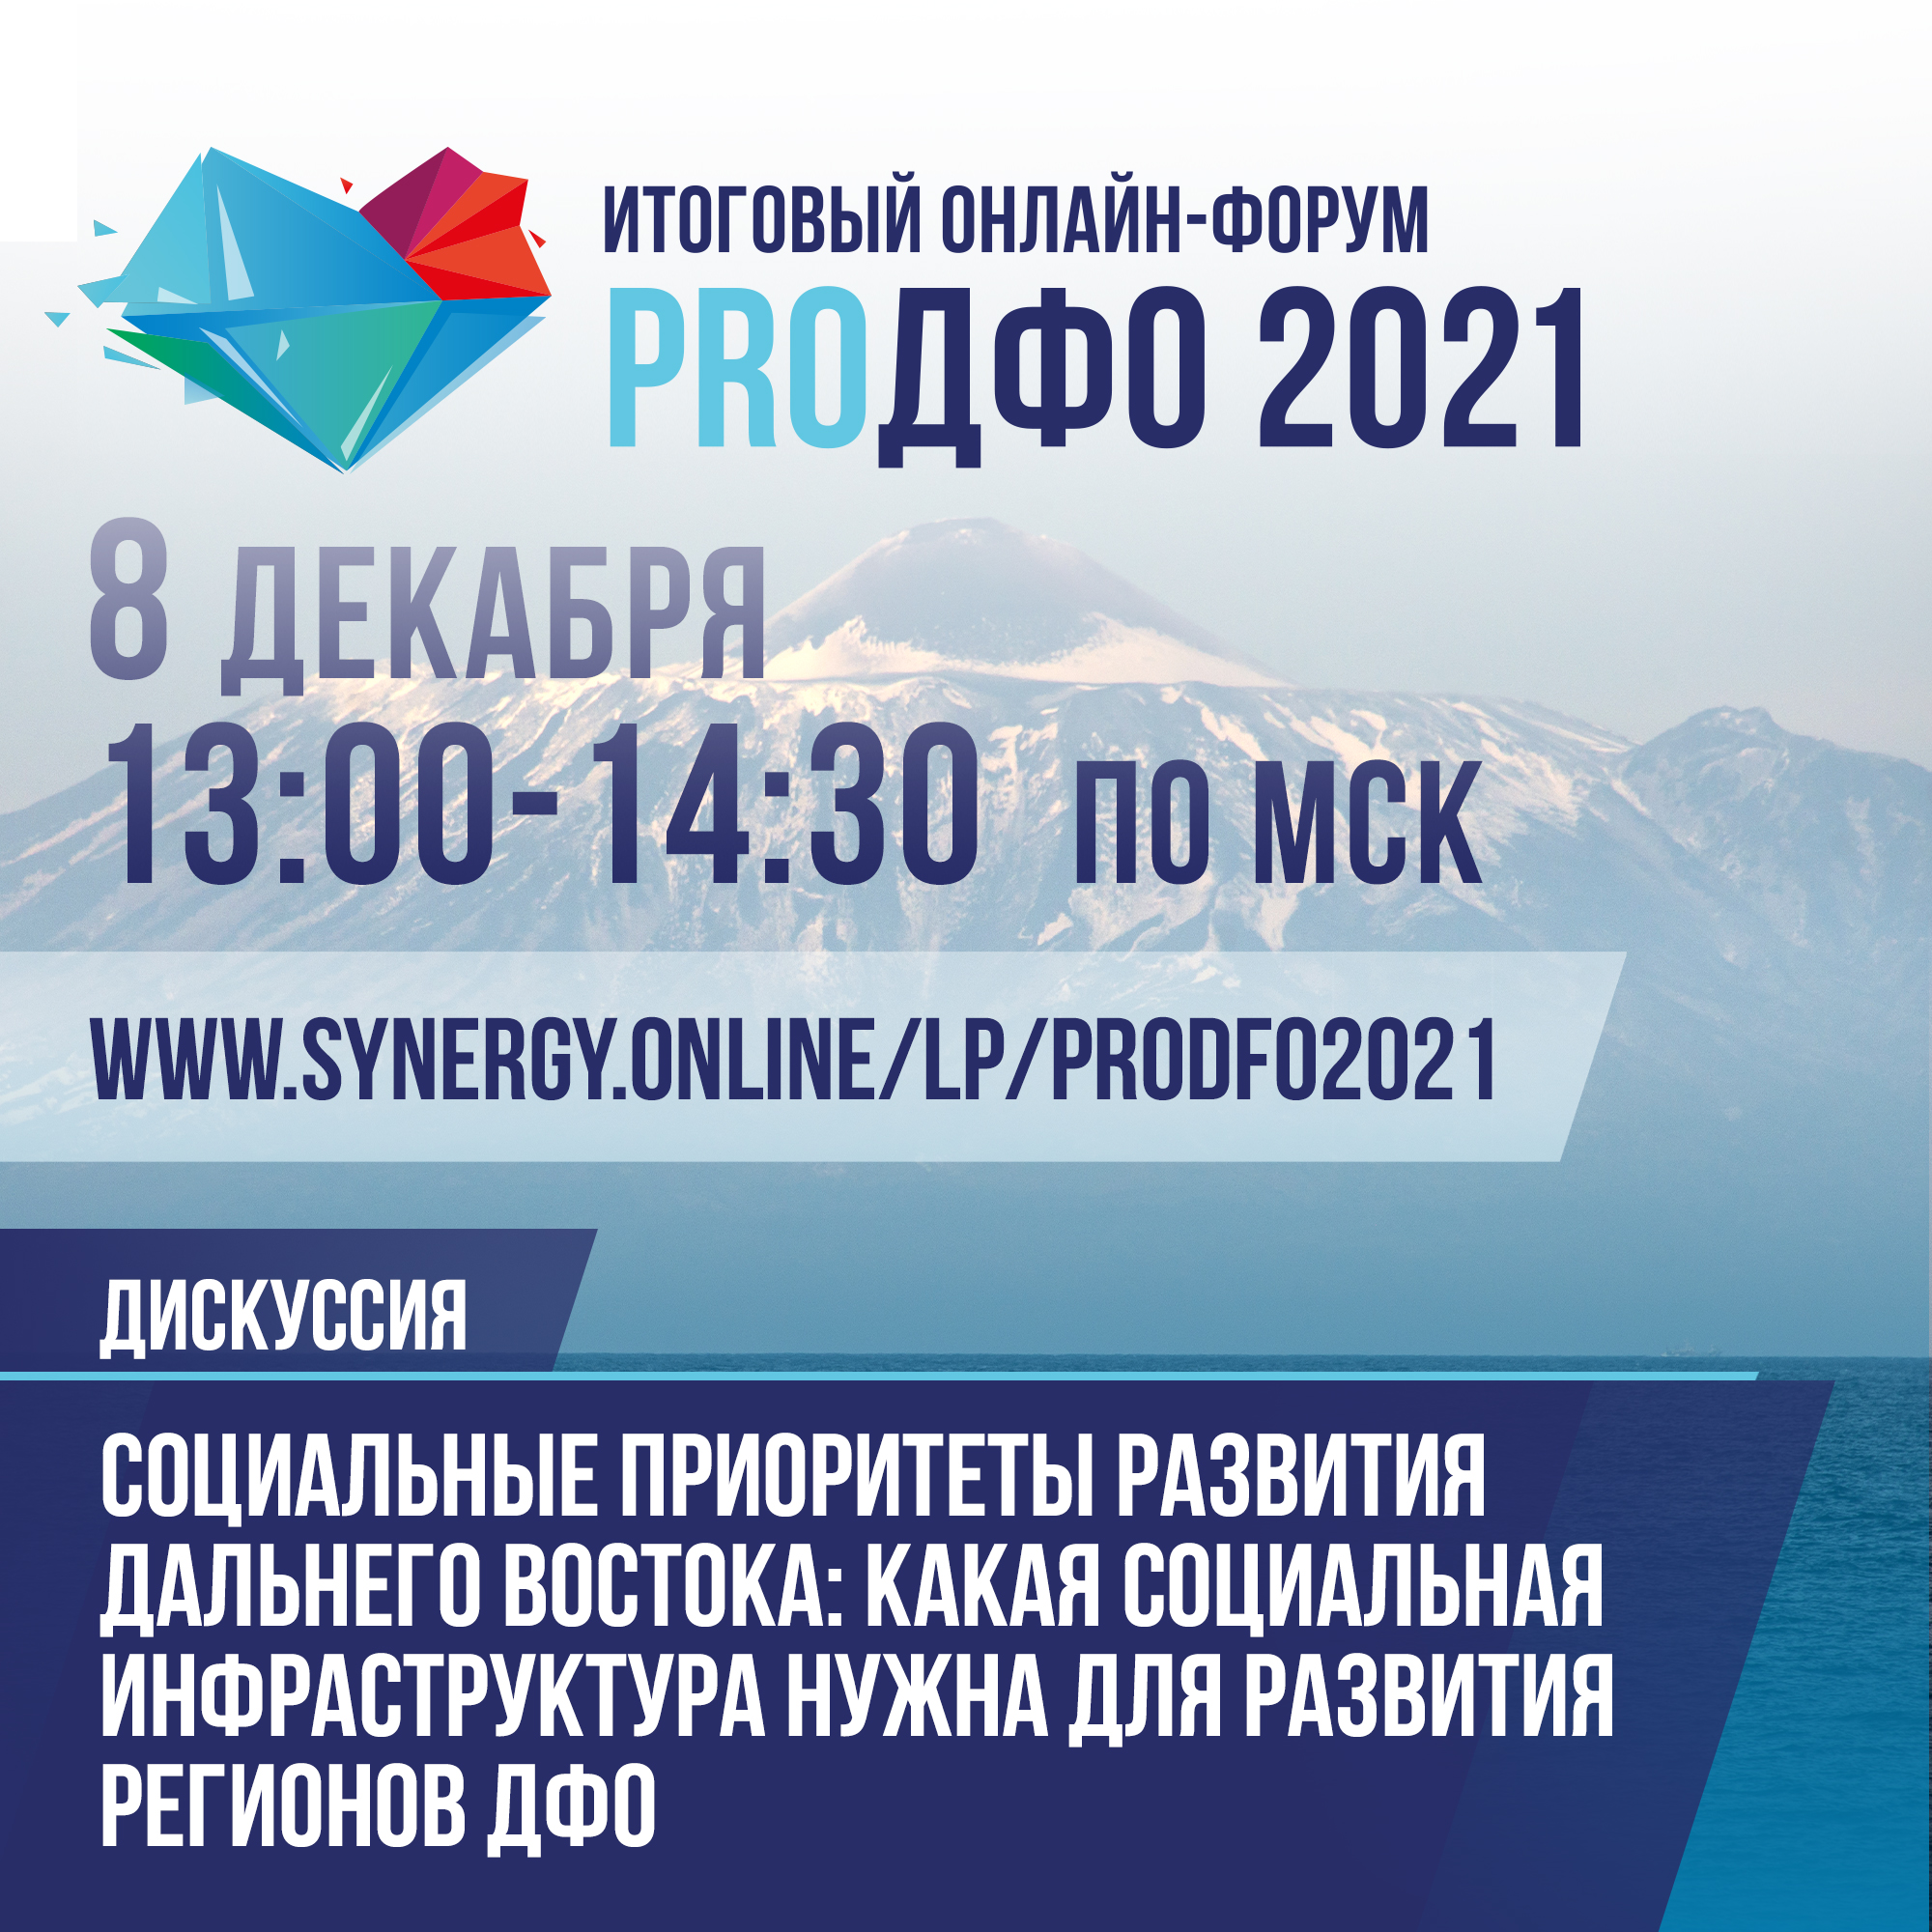 Социальную инфраструктуру для развития регионов обсудят на онлайн-форуме «ProДФО-2021»